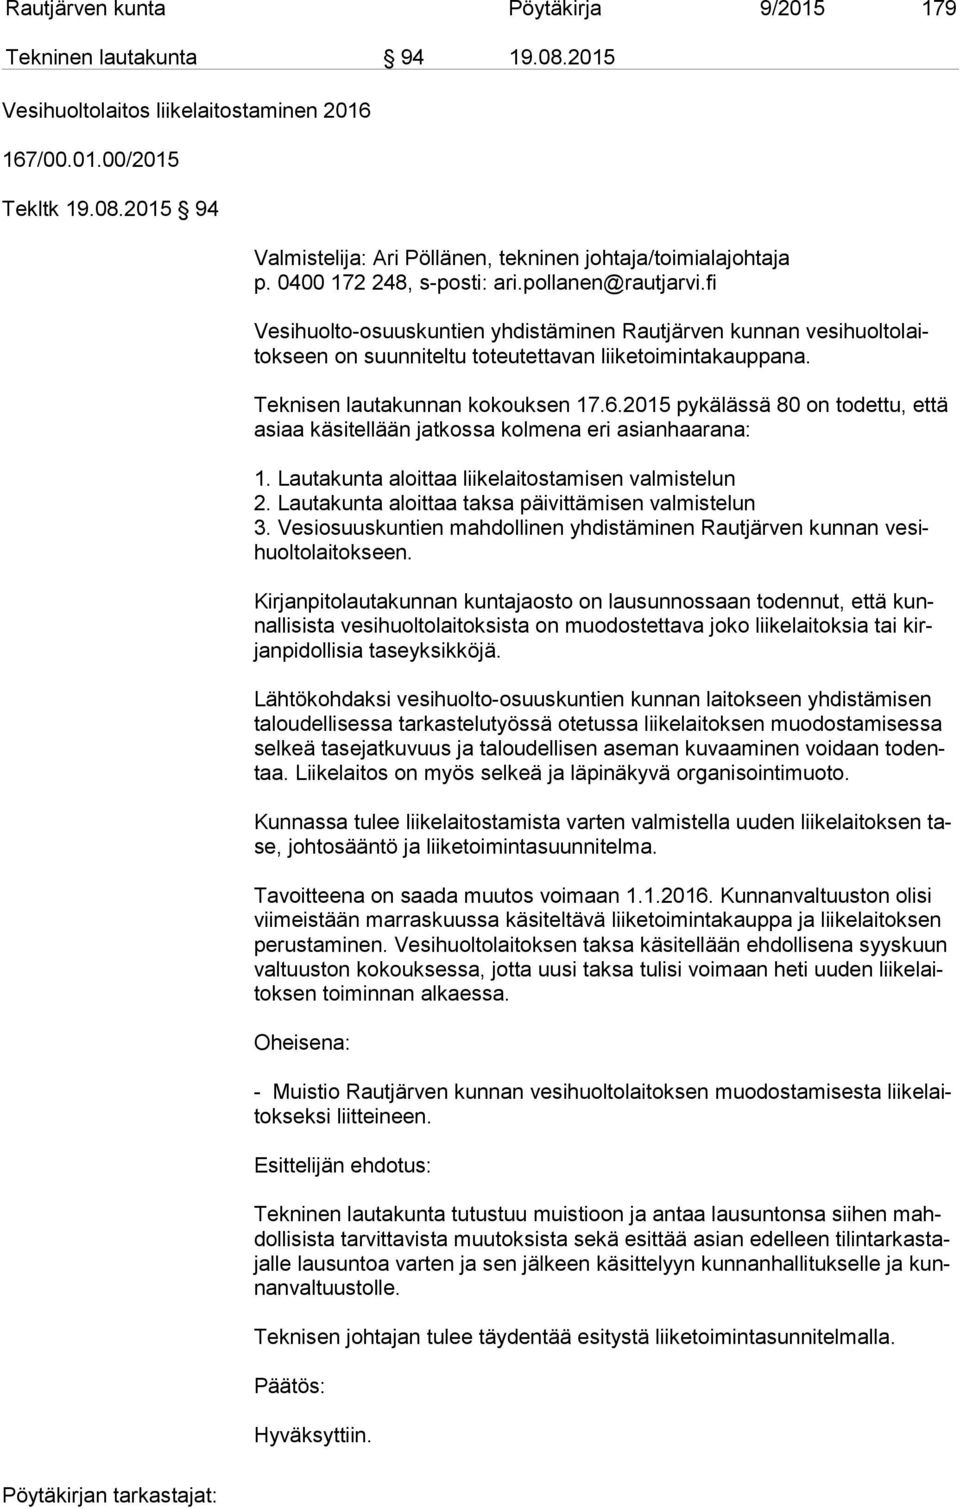 2015 94 Valmistelija: Ari Pöllänen, tekninen johtaja/toimialajohtaja Vesihuolto-osuuskuntien yhdistäminen Rautjärven kunnan ve si huol to laitok seen on suunniteltu toteutettavan